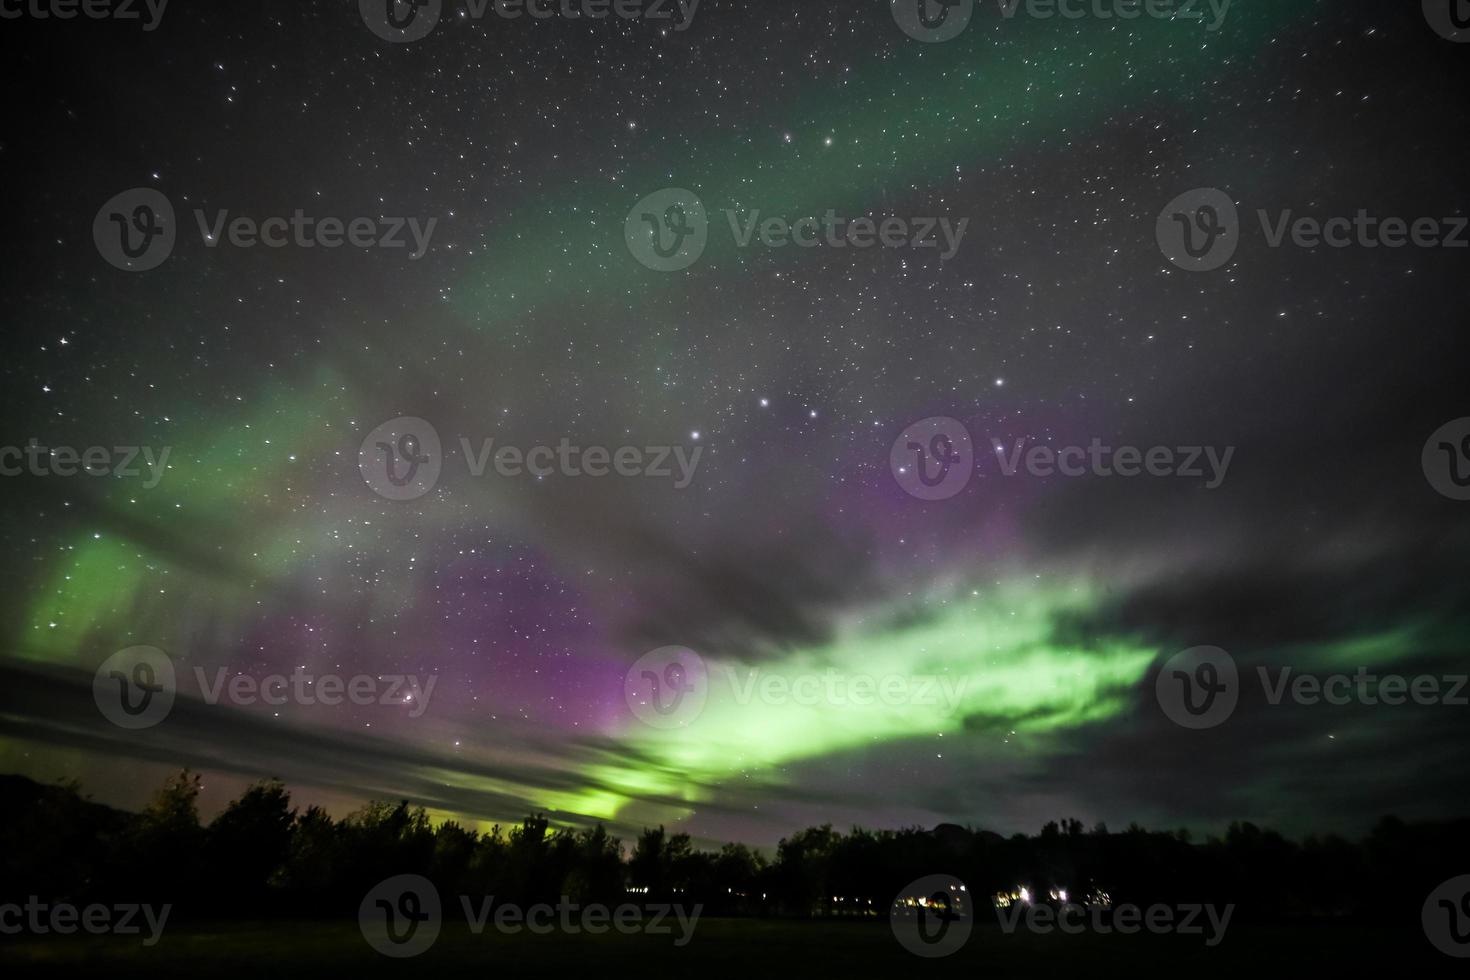 aurores boréales au-dessus de l'islande photo